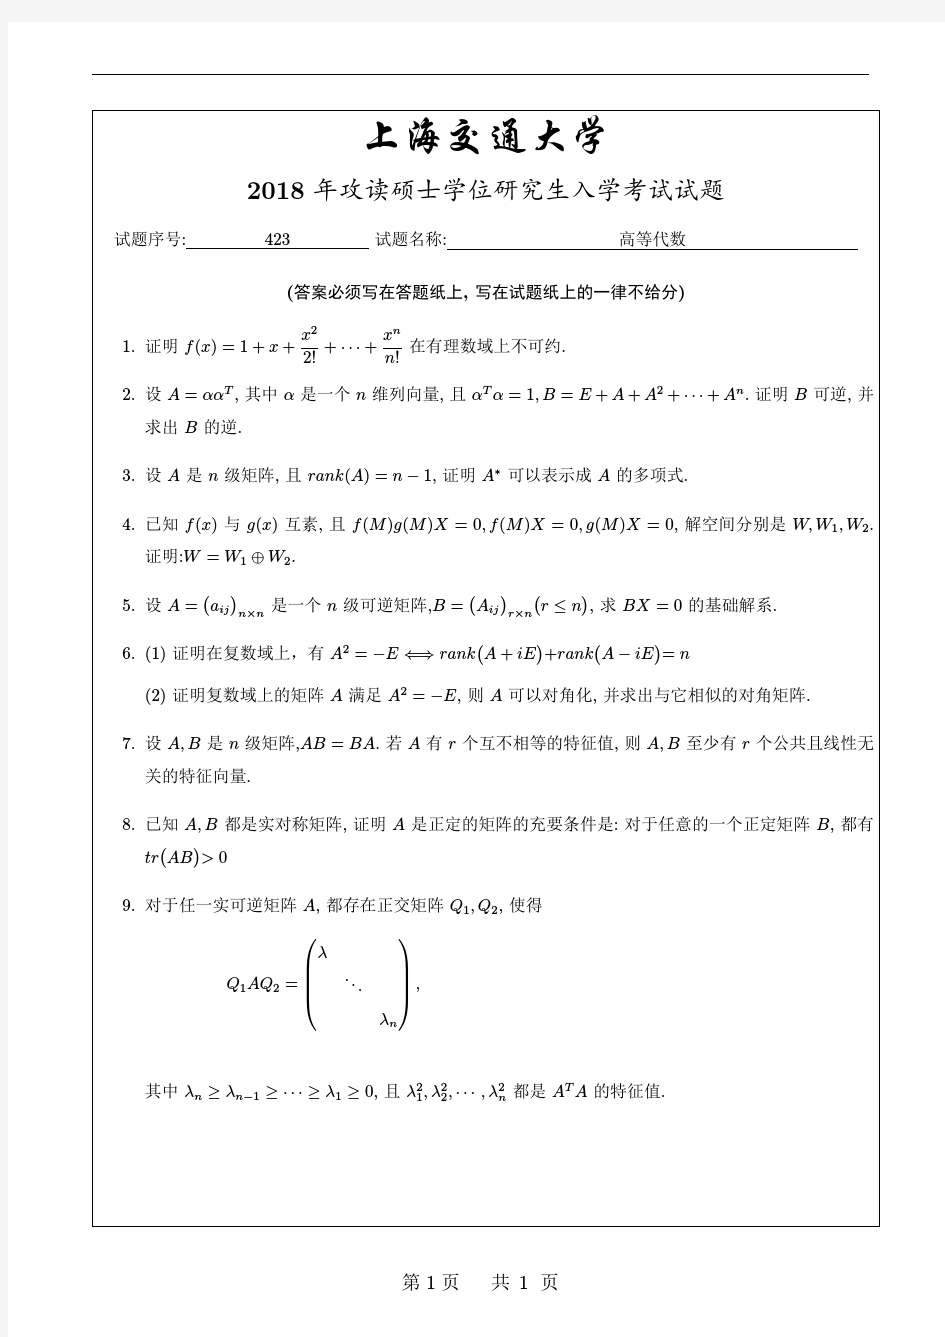 上海交通大学2018高等代数试题(1)